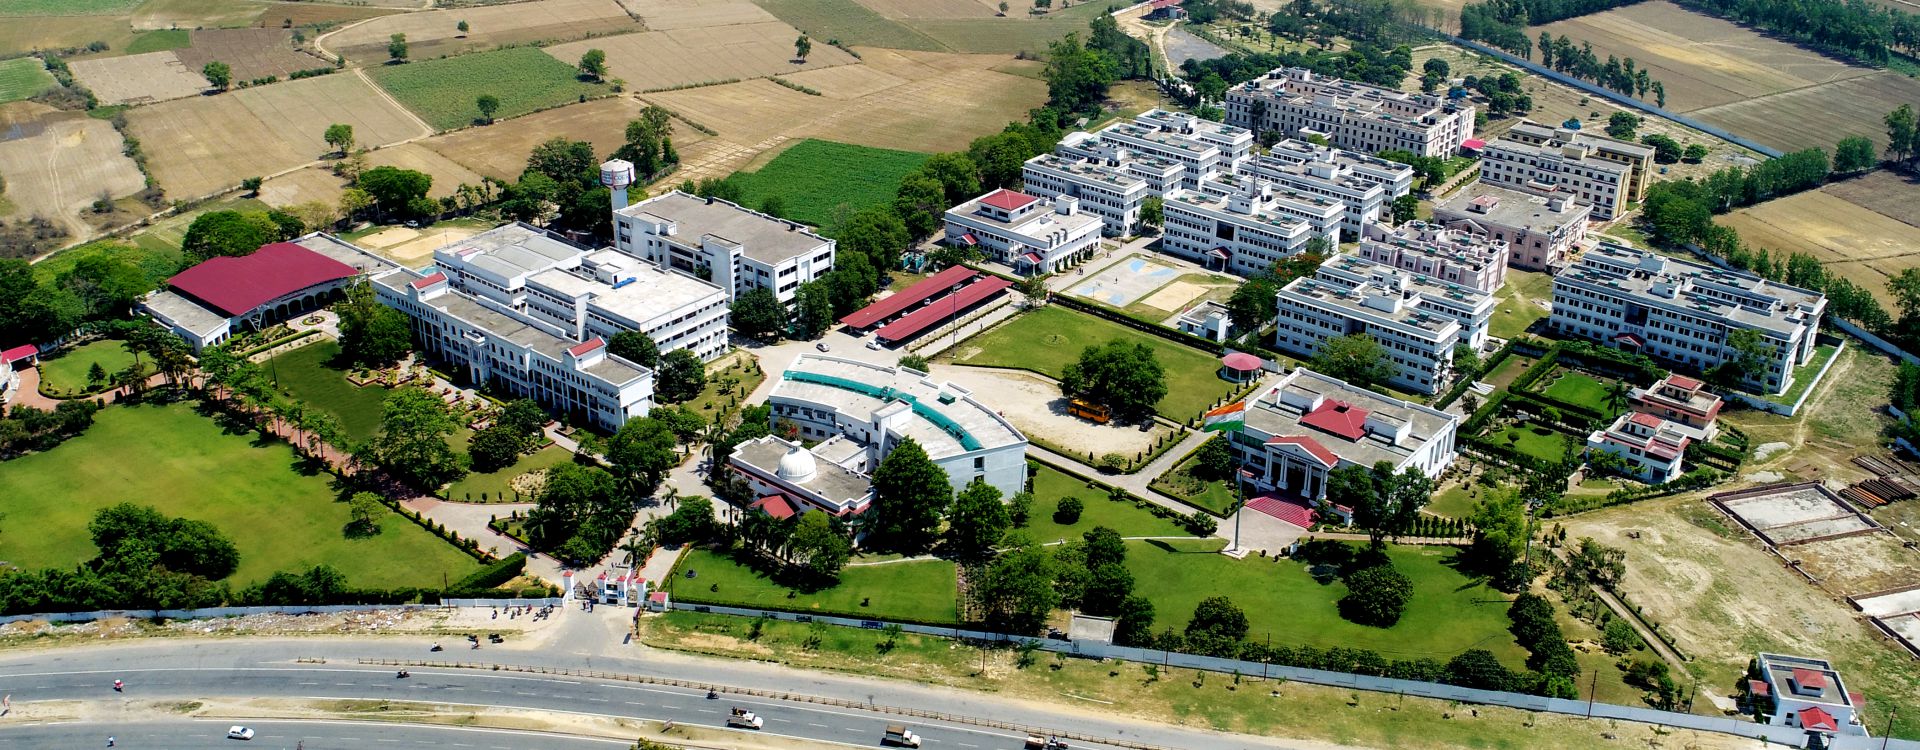 College of Engineering Roorkee